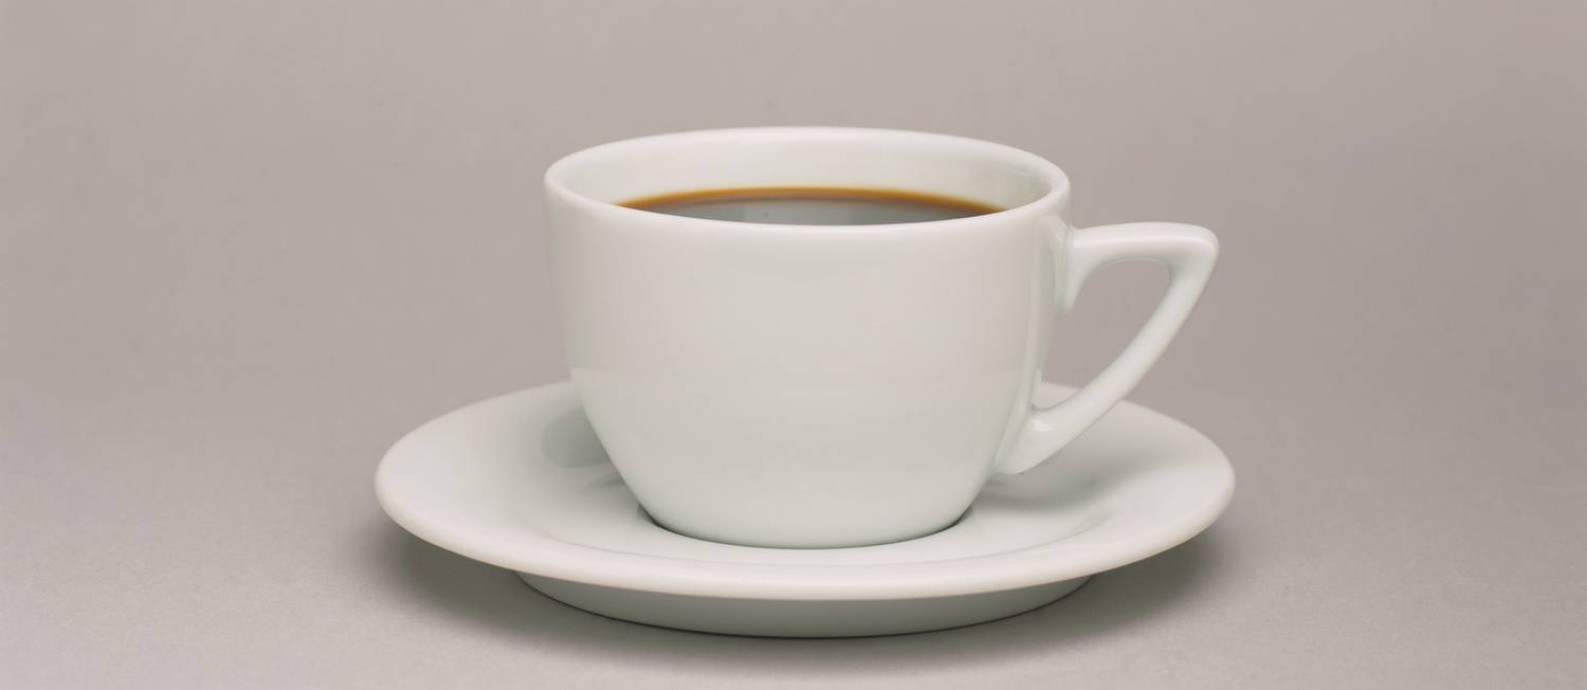 O Supremo mantém o hábito de servir café aos funcionários da Corte. Mas, agora, quem quiser terá de levar sua própria xícara. Foto: LAL / Getty Images